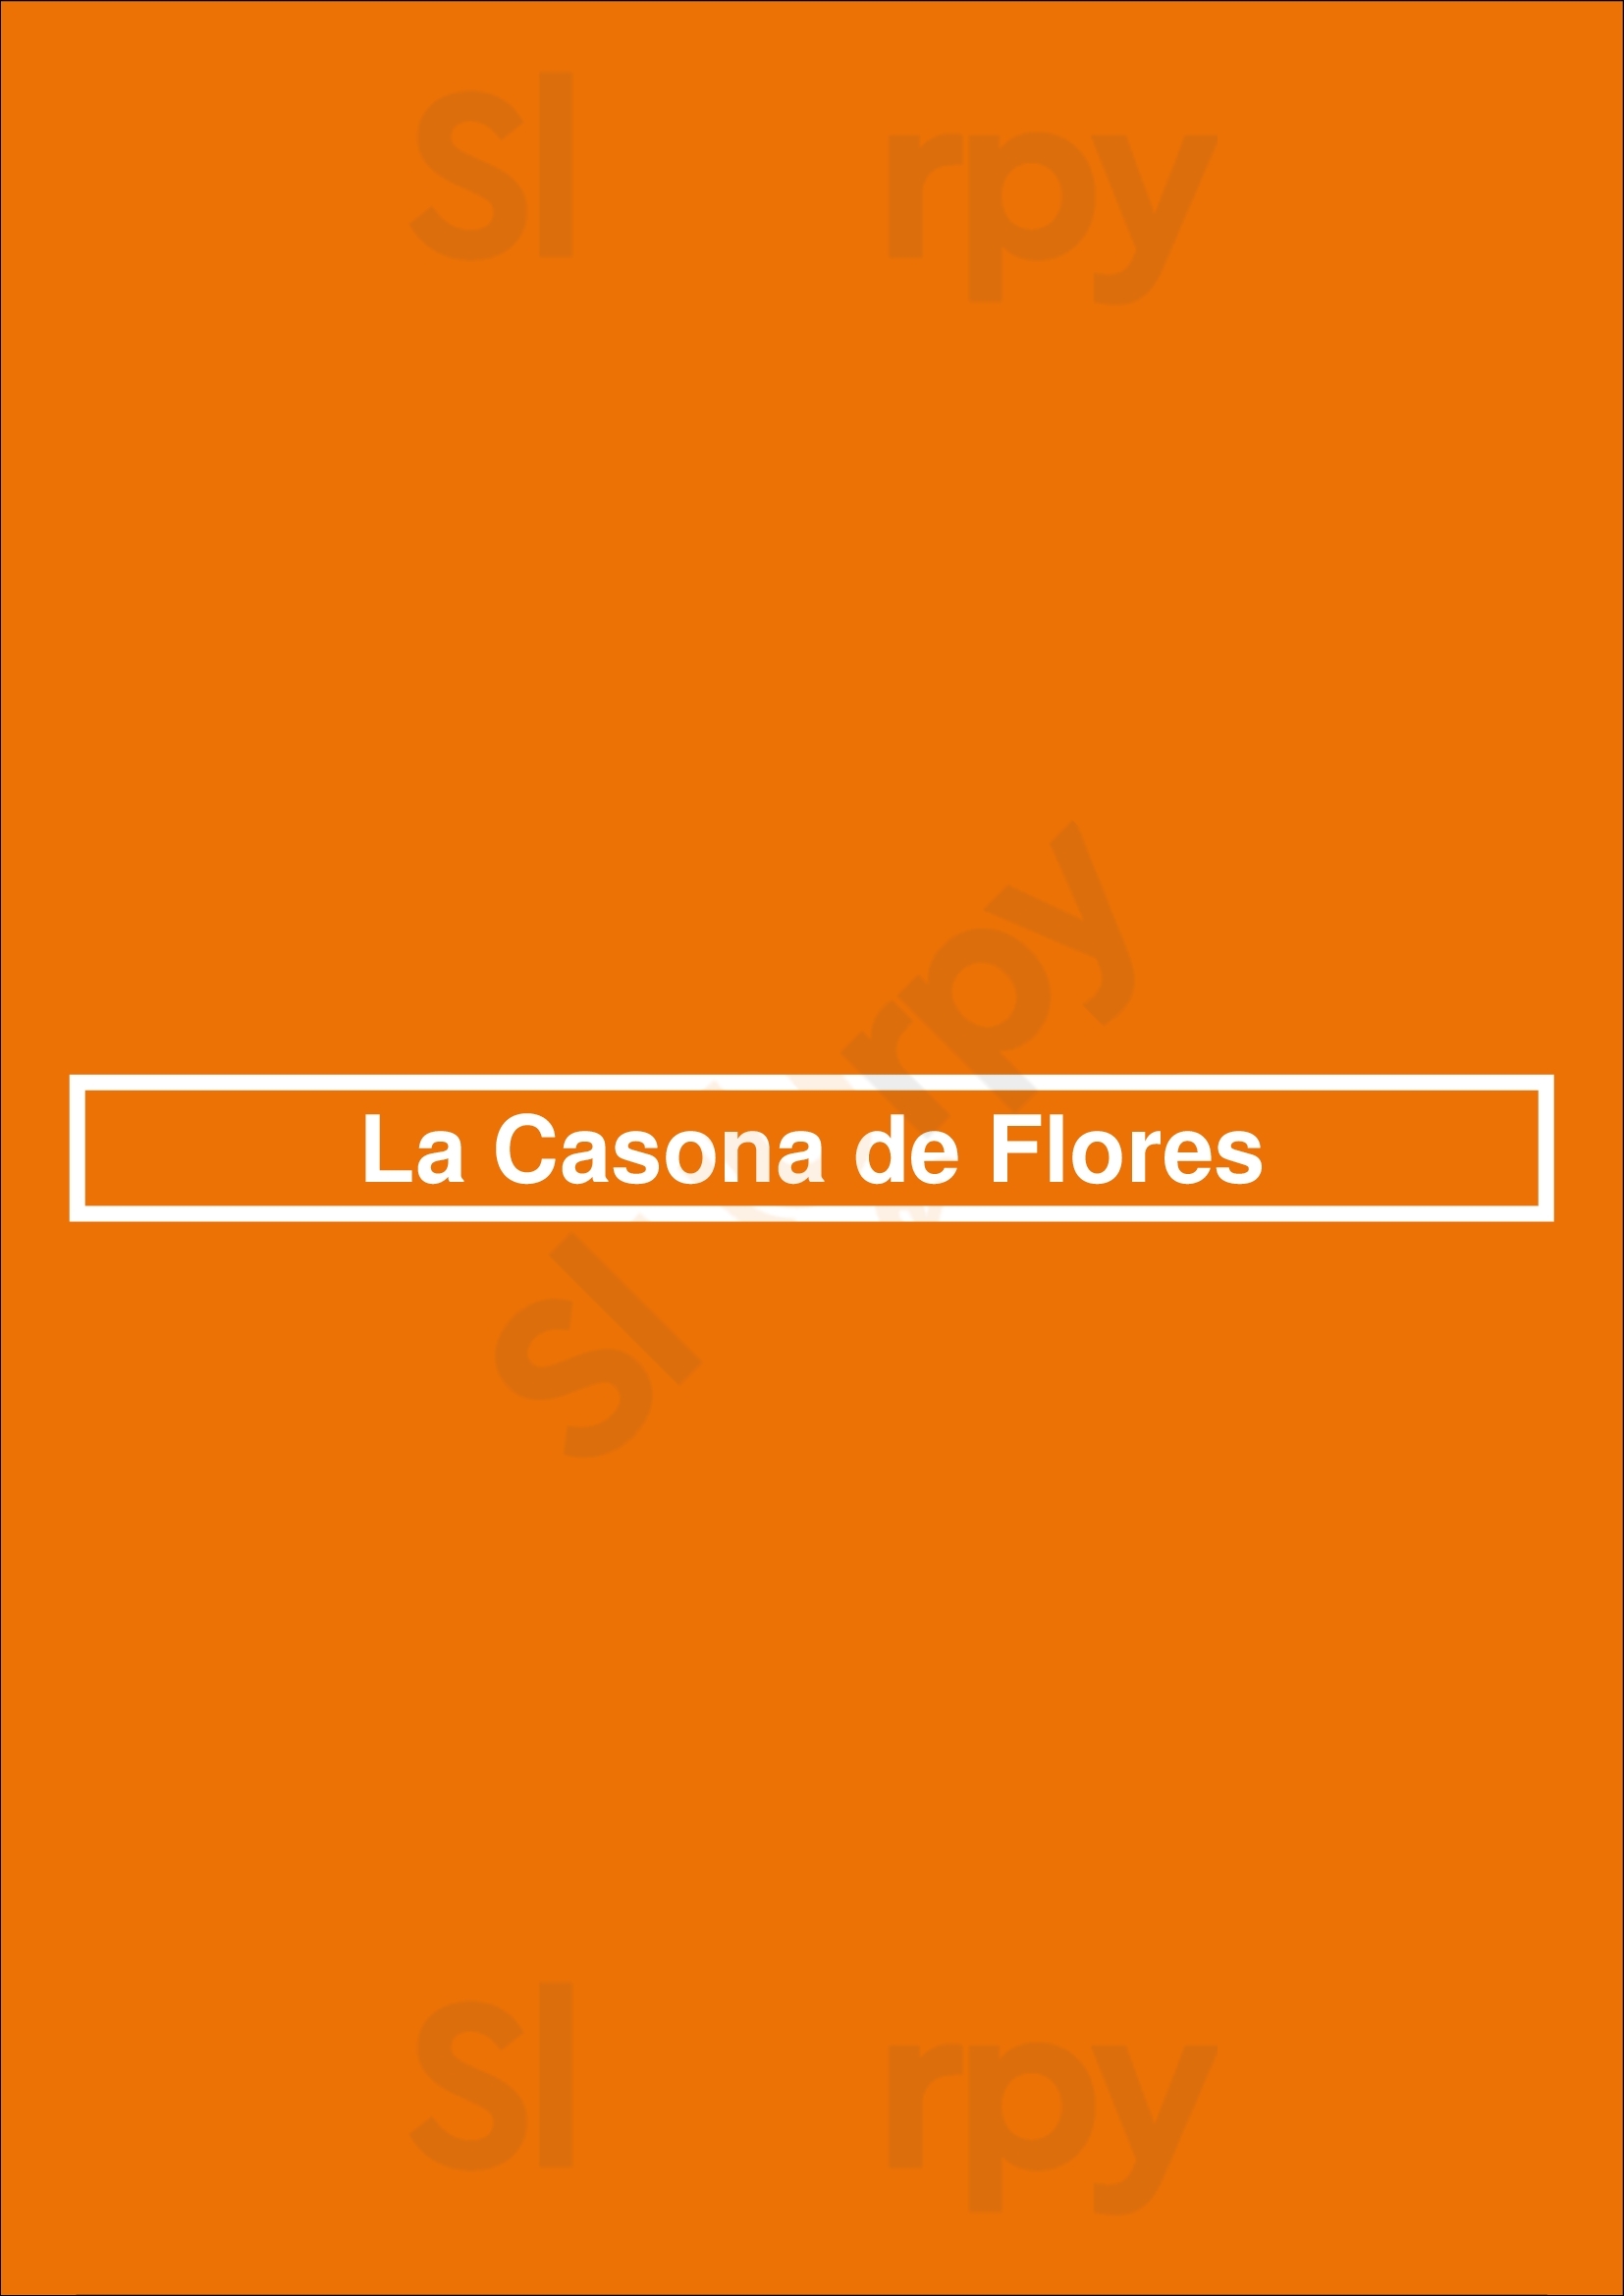 La Casona De Flores Buenos Aires Menu - 1